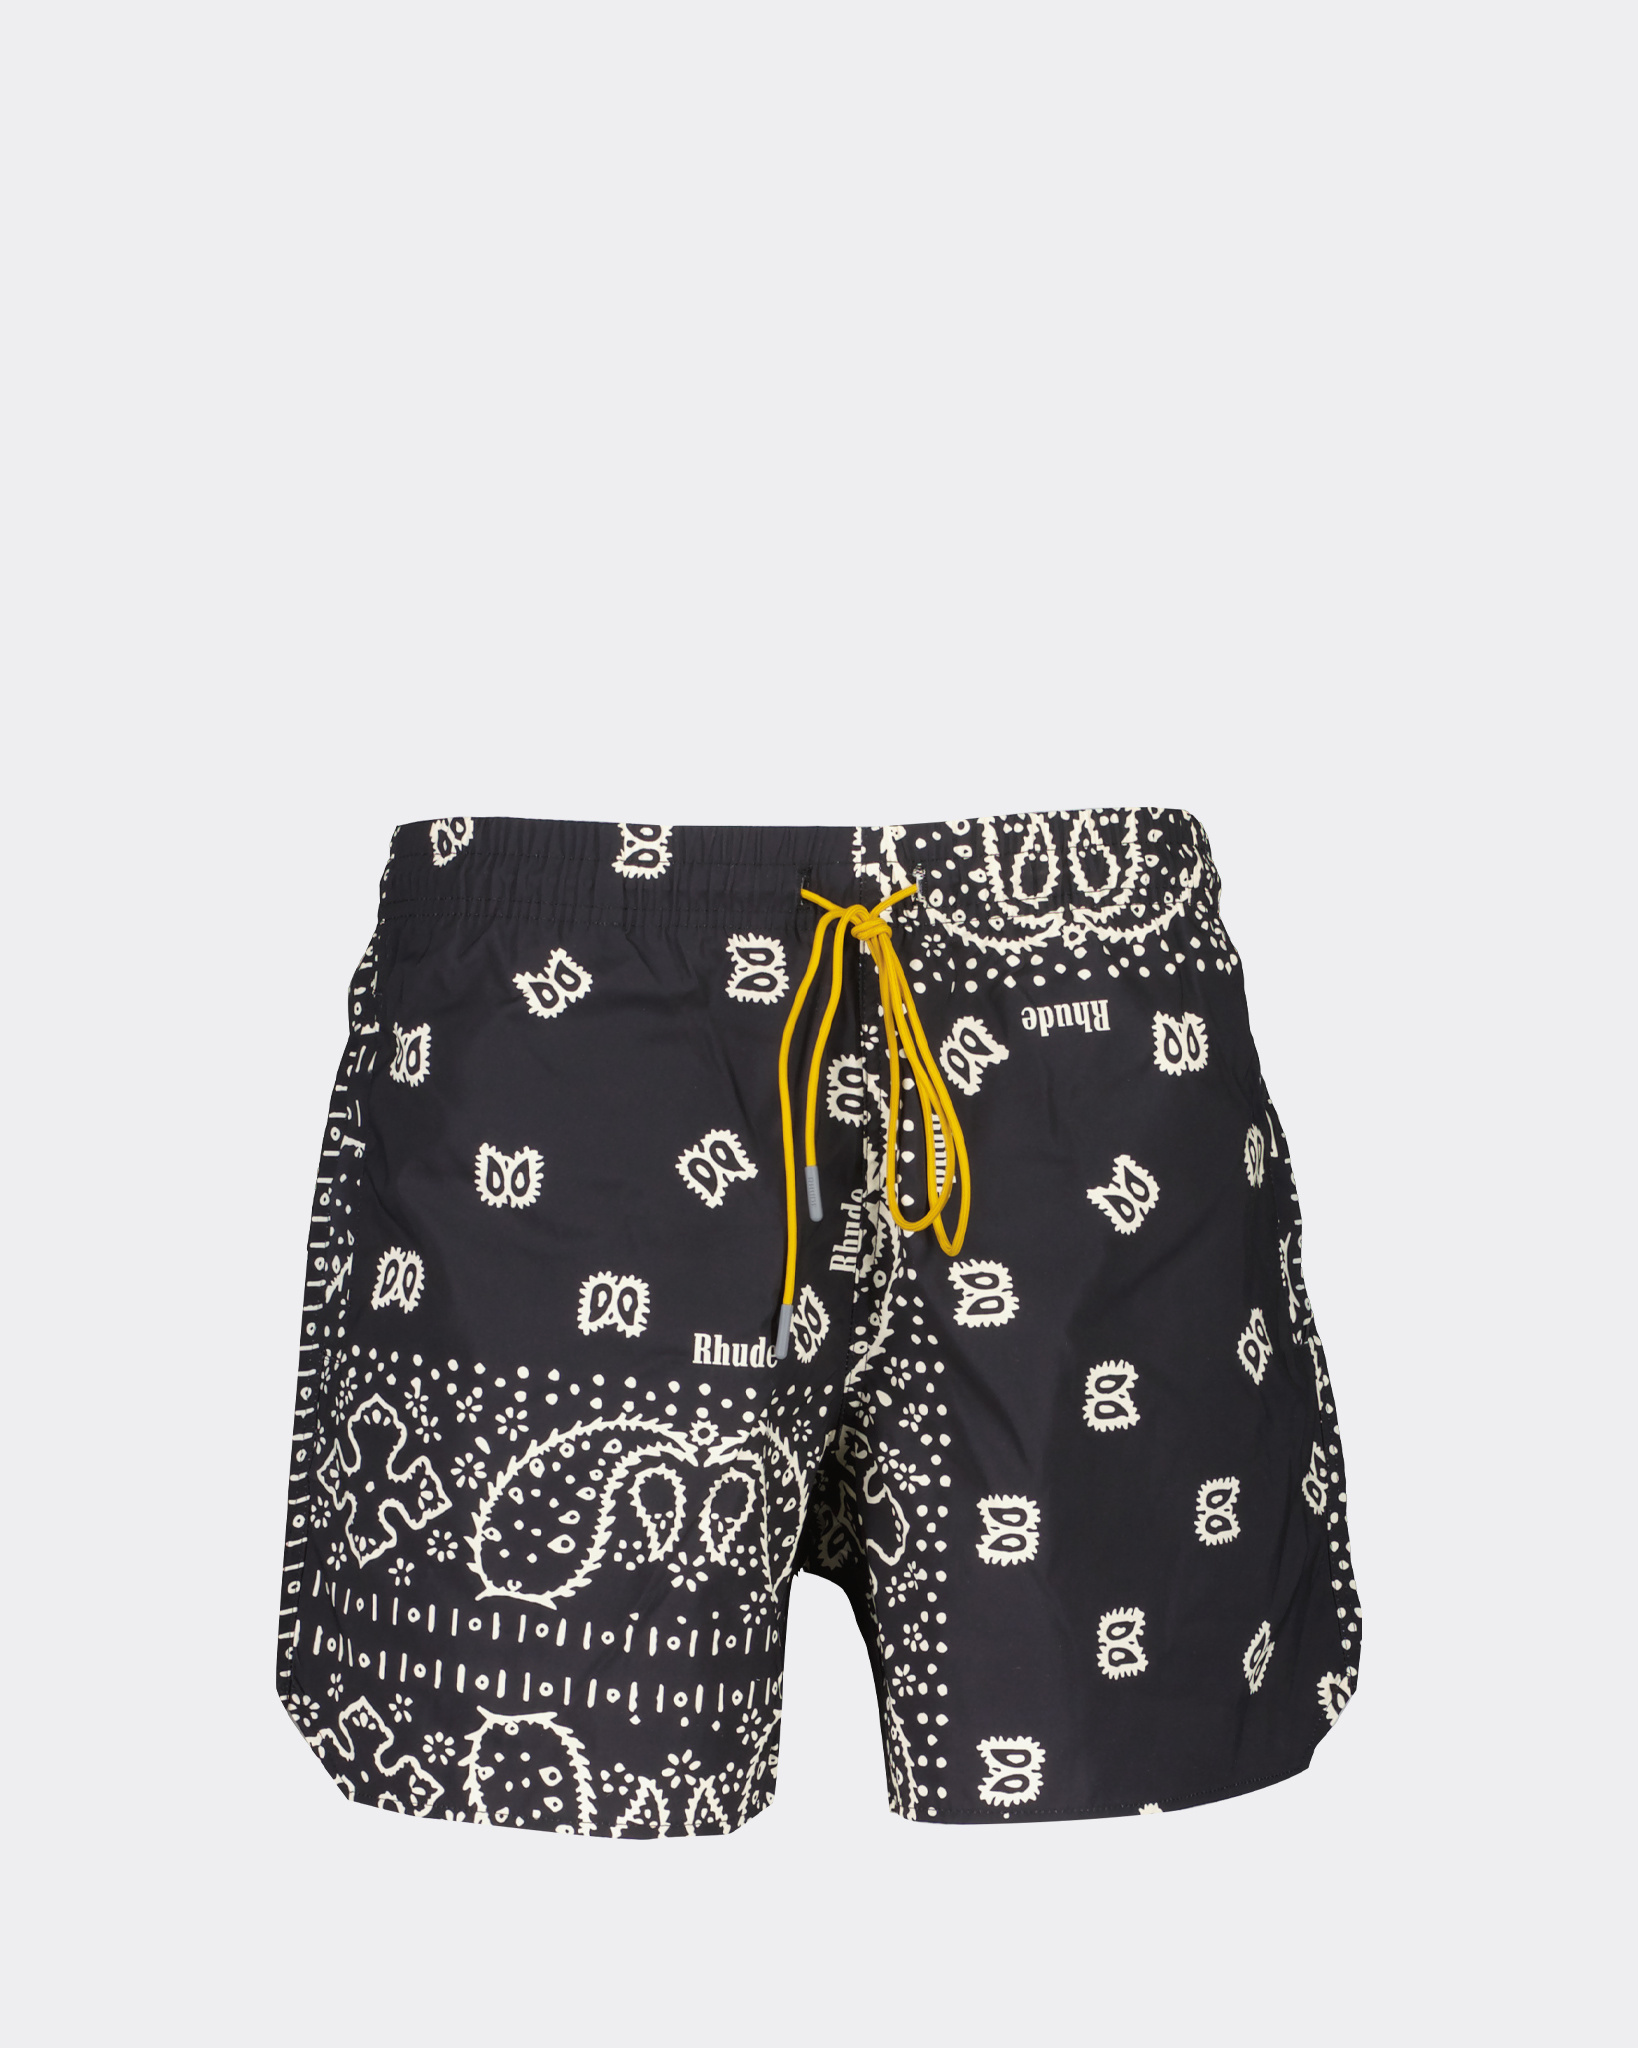 Rhude bandanna swim shorts - パンツ